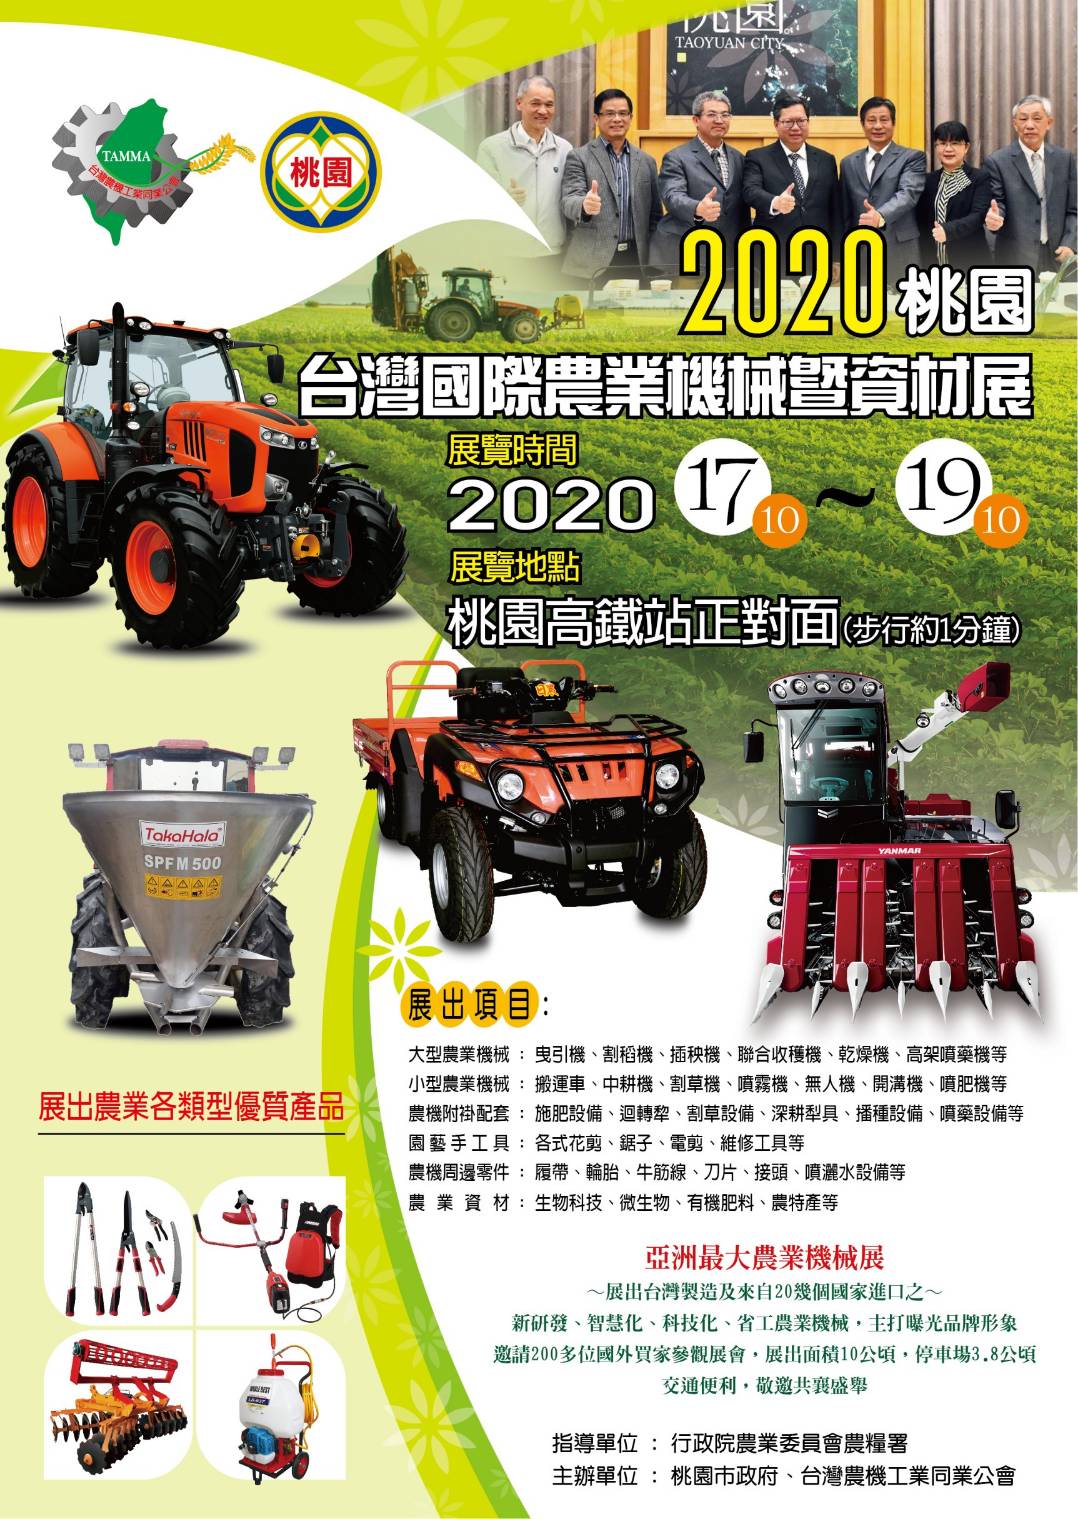 2020年農機展15年來首度在桃園辦展，千百種物美價廉農機具都在桃園 - 20200722114150-389833868.jpg(圖)